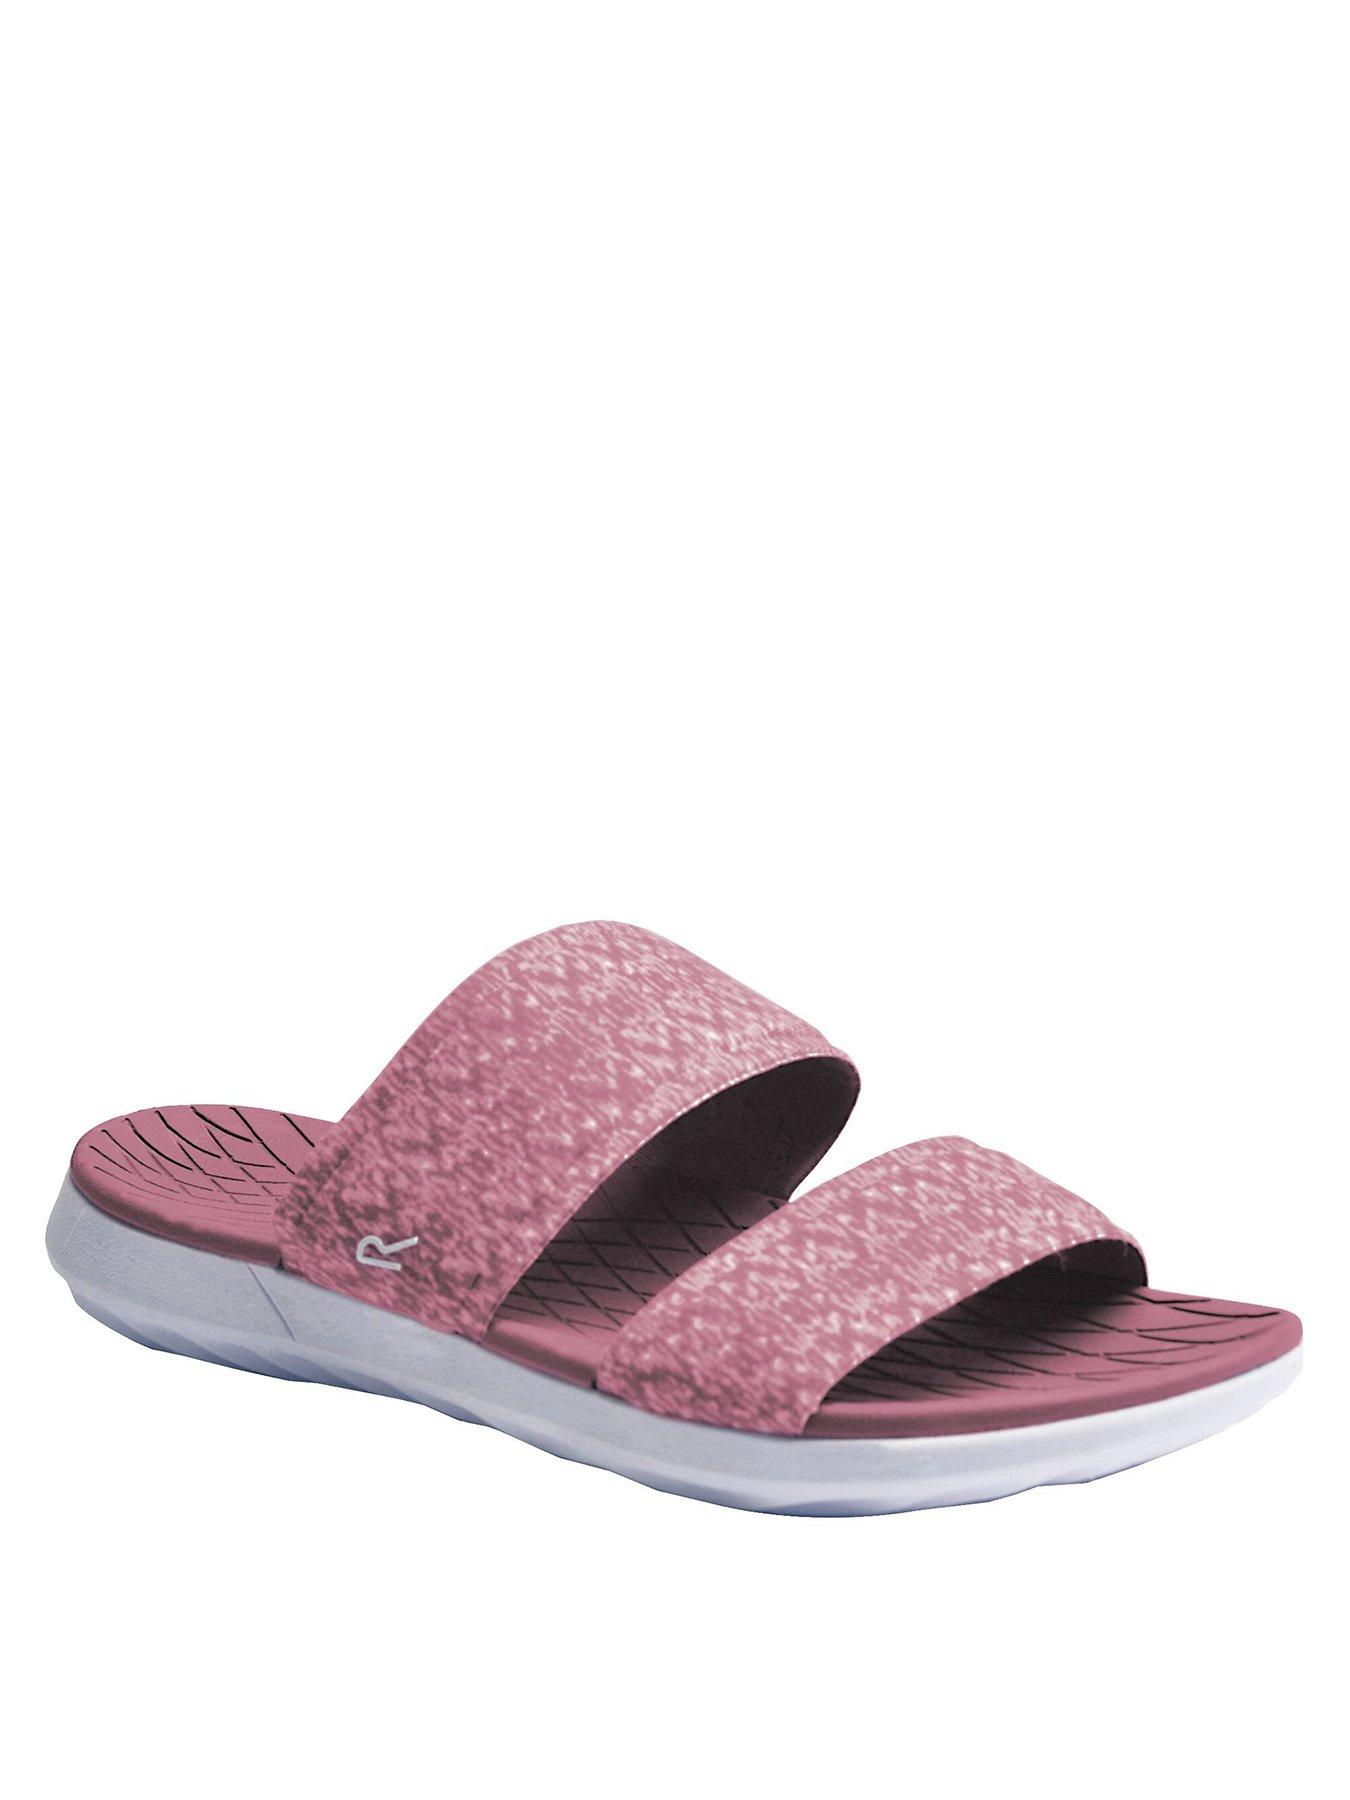 Women Tyla Sandals - Light Pink